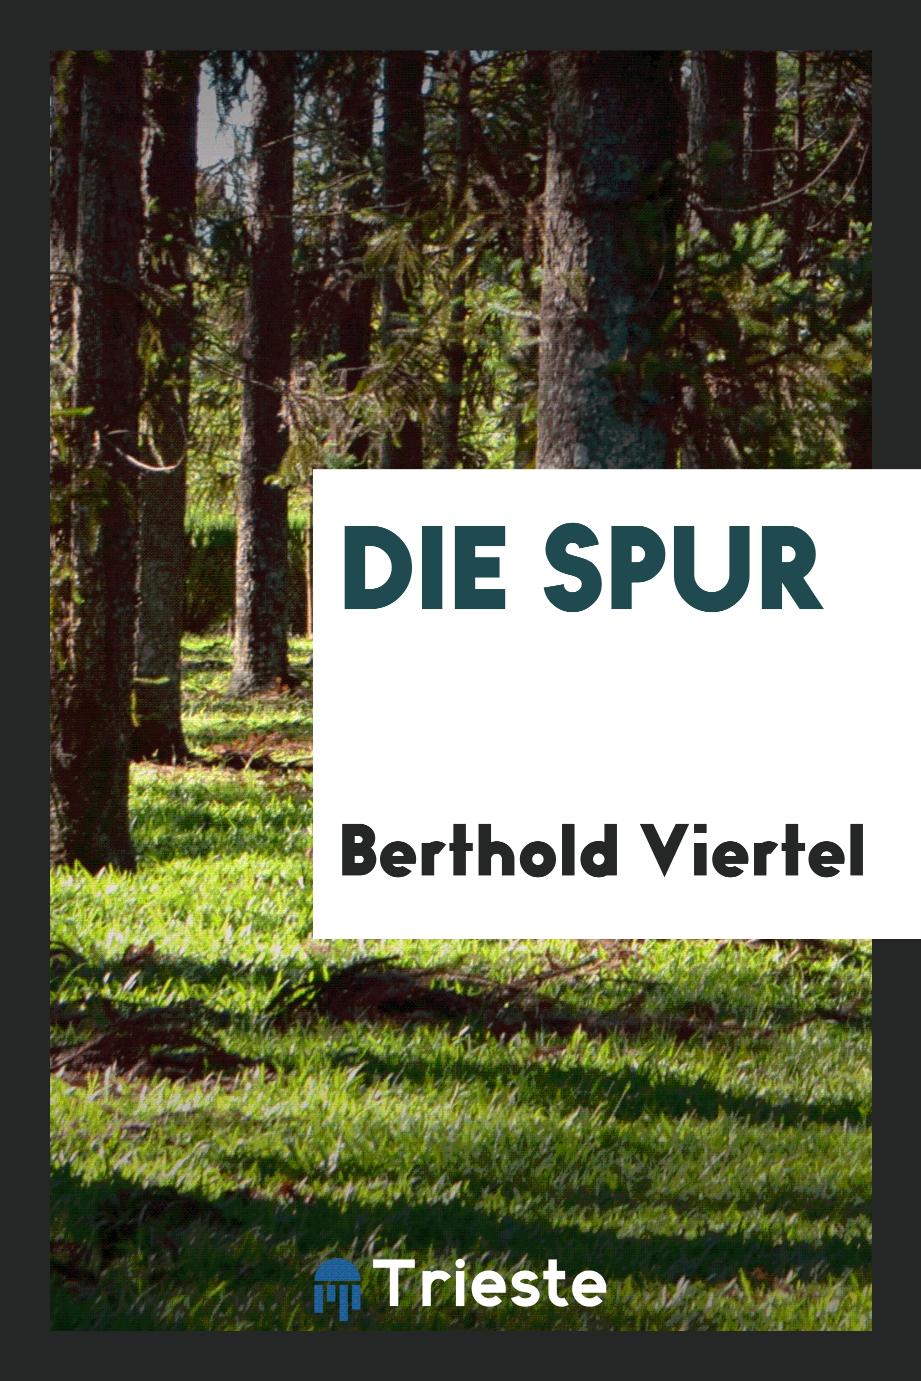 Berthold Viertel - Die Spur